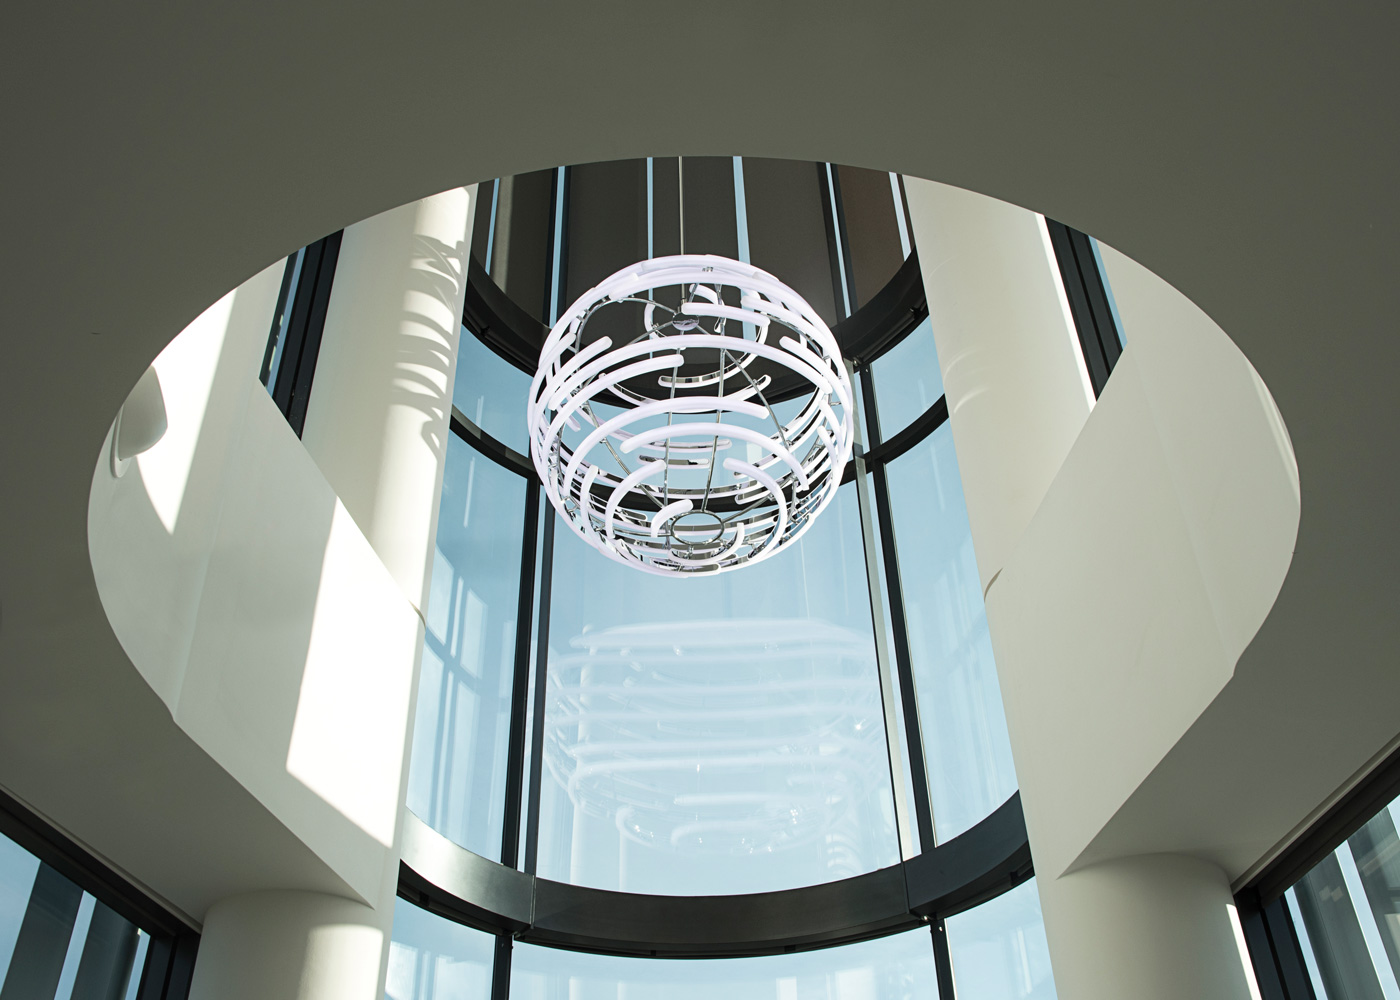 Bespoke lighting by LUUM for Deloitte